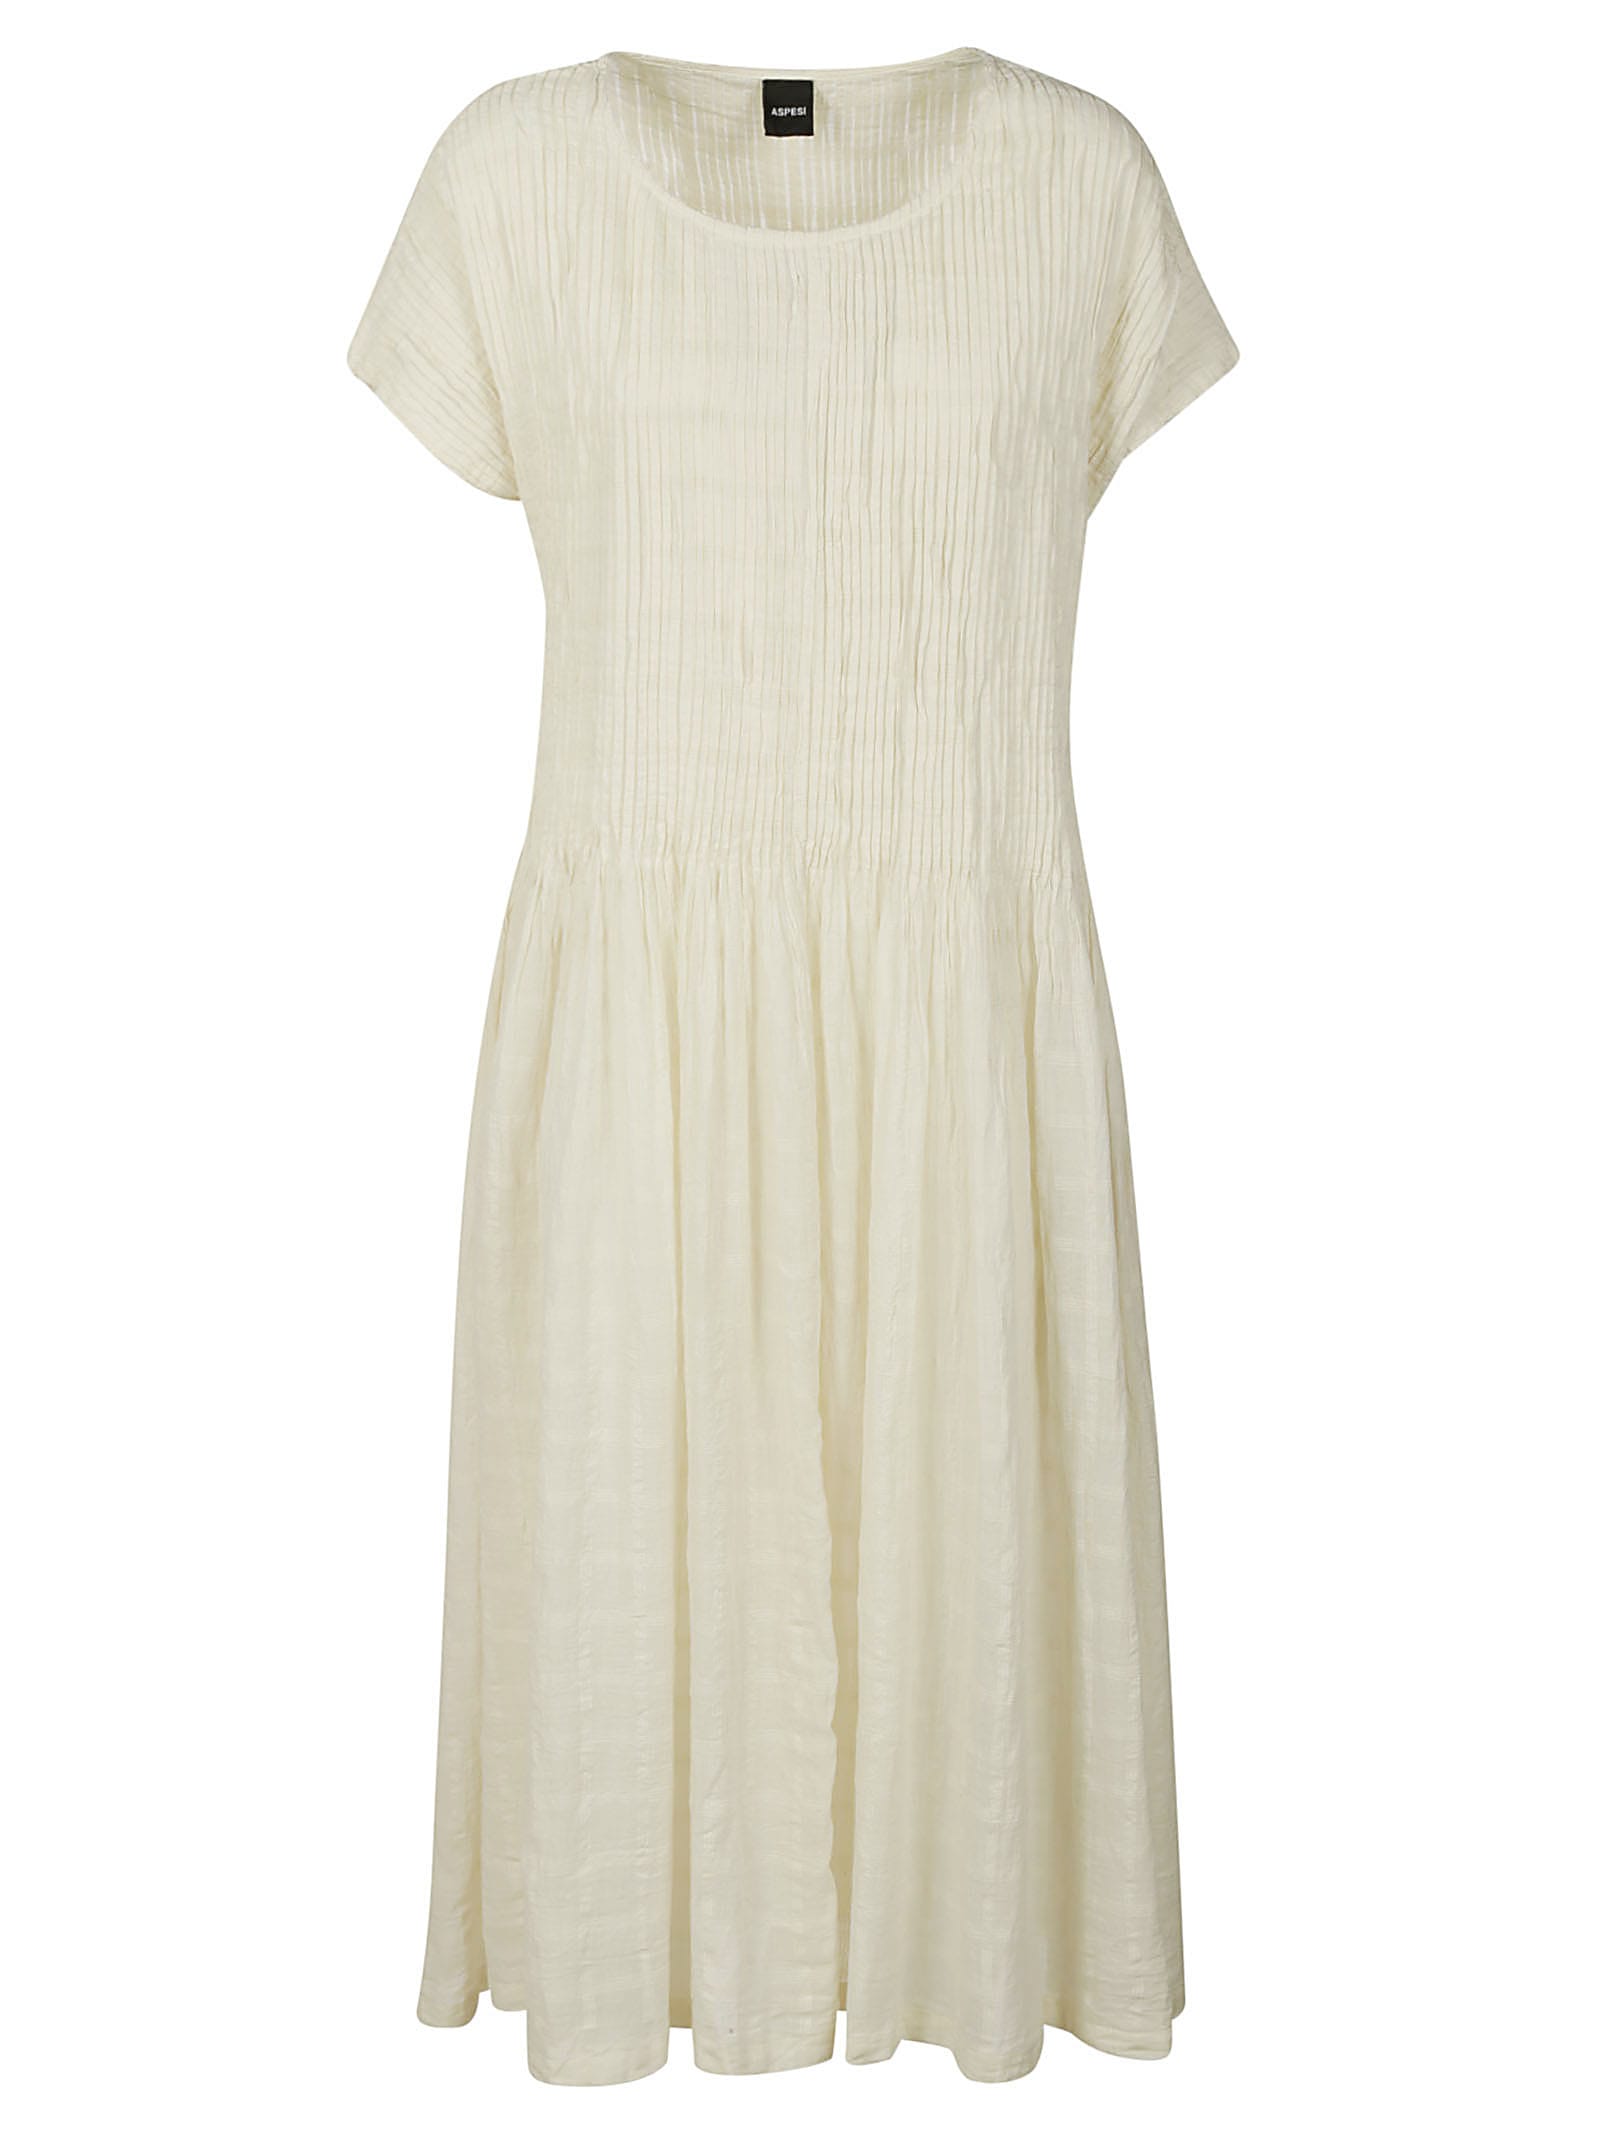 Aspesi Short Sleeve Pleated Dress